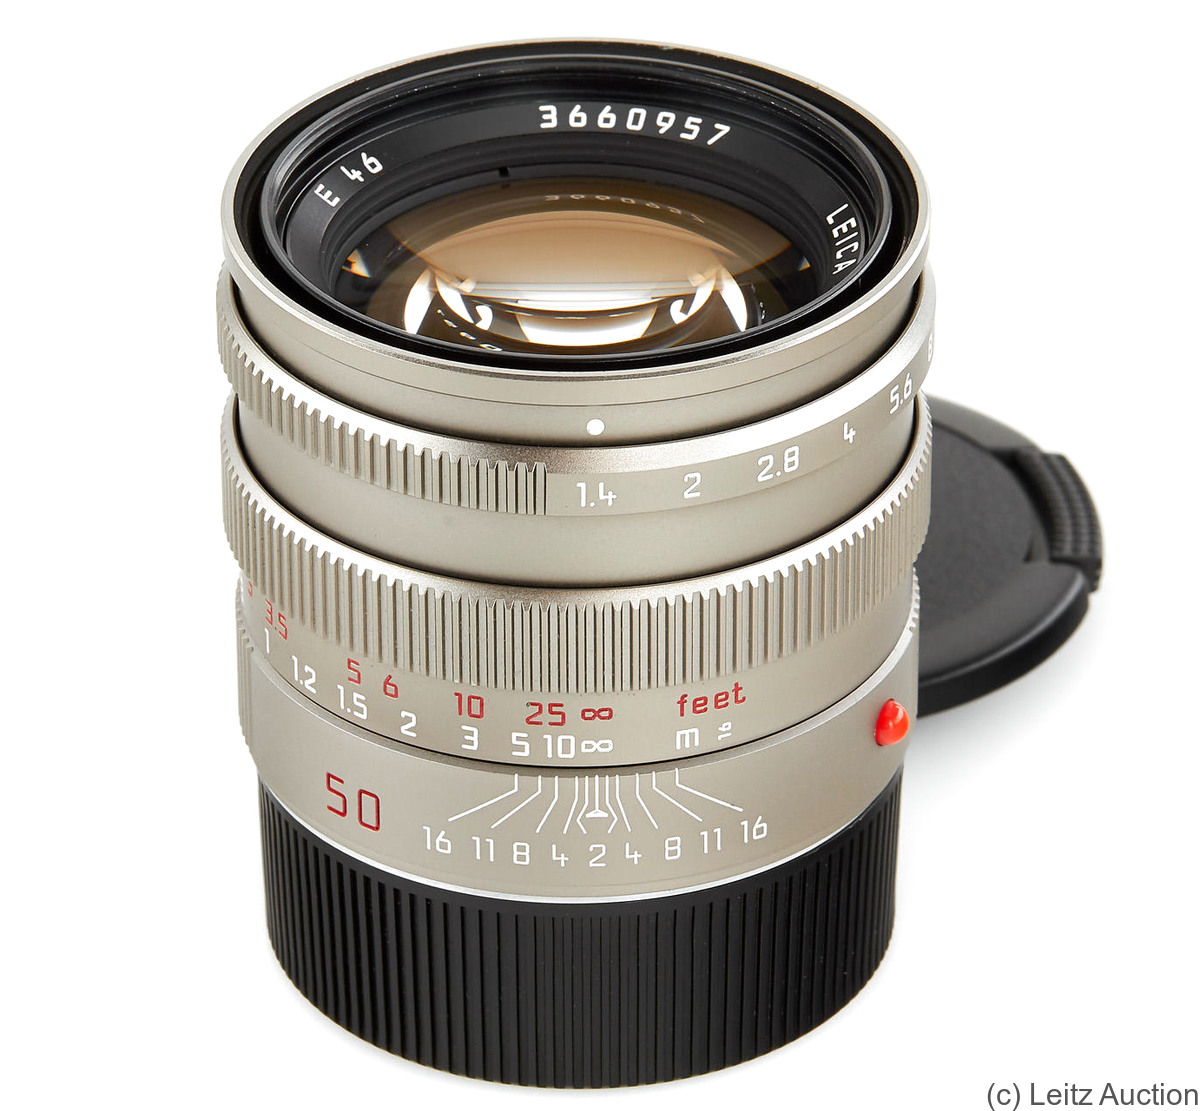 Leitz: 50mm (5cm) f1.4 Summilux-M (BM, titan) camera